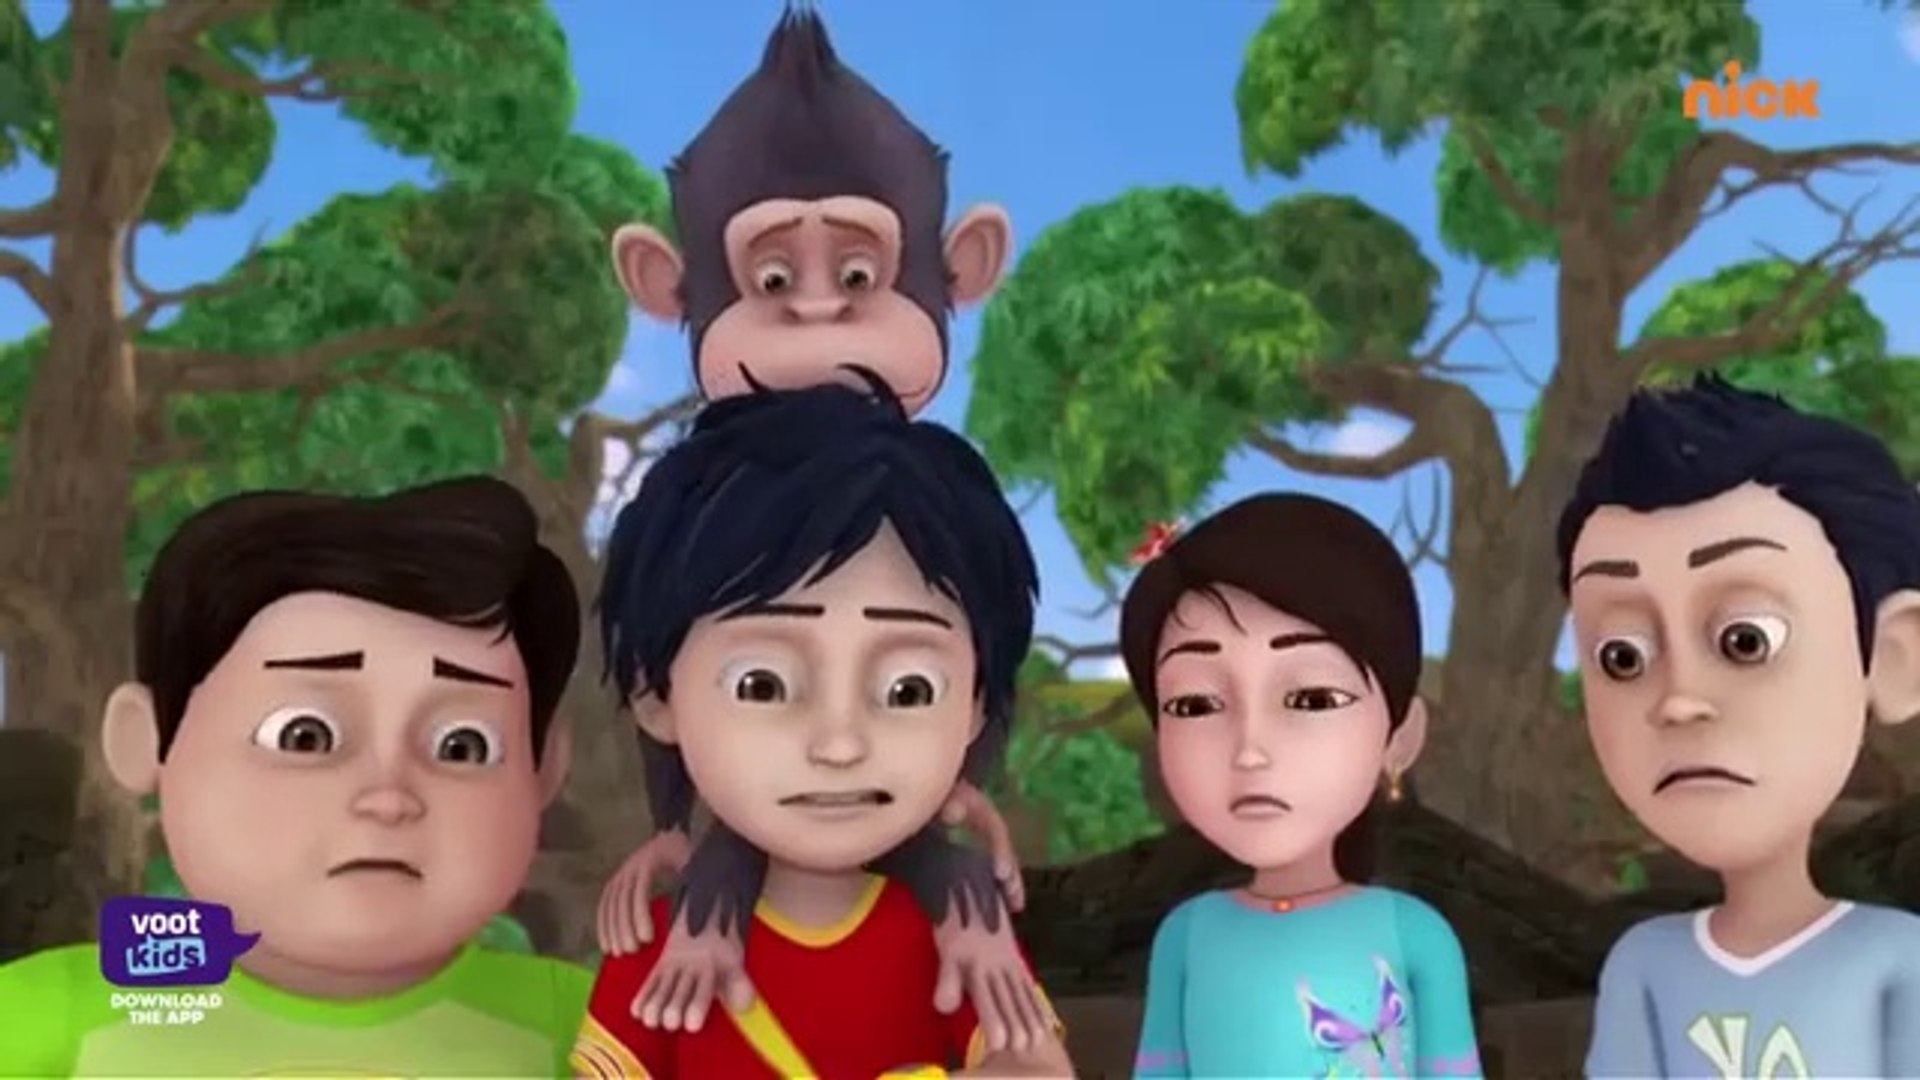 Share: Shiva - शिवा - Baby Chimpanzee - Episode 26 - shiva cartoon,siva  cartoon,kids cartoon,mou patlu cartoon,shiva acrtoon,kartun shiva,shiva, shiva in tamil,shiva voot kids,shiva shiva,shiva new episode,shiva videos  for kids,rudra cartoon,cartoon ...